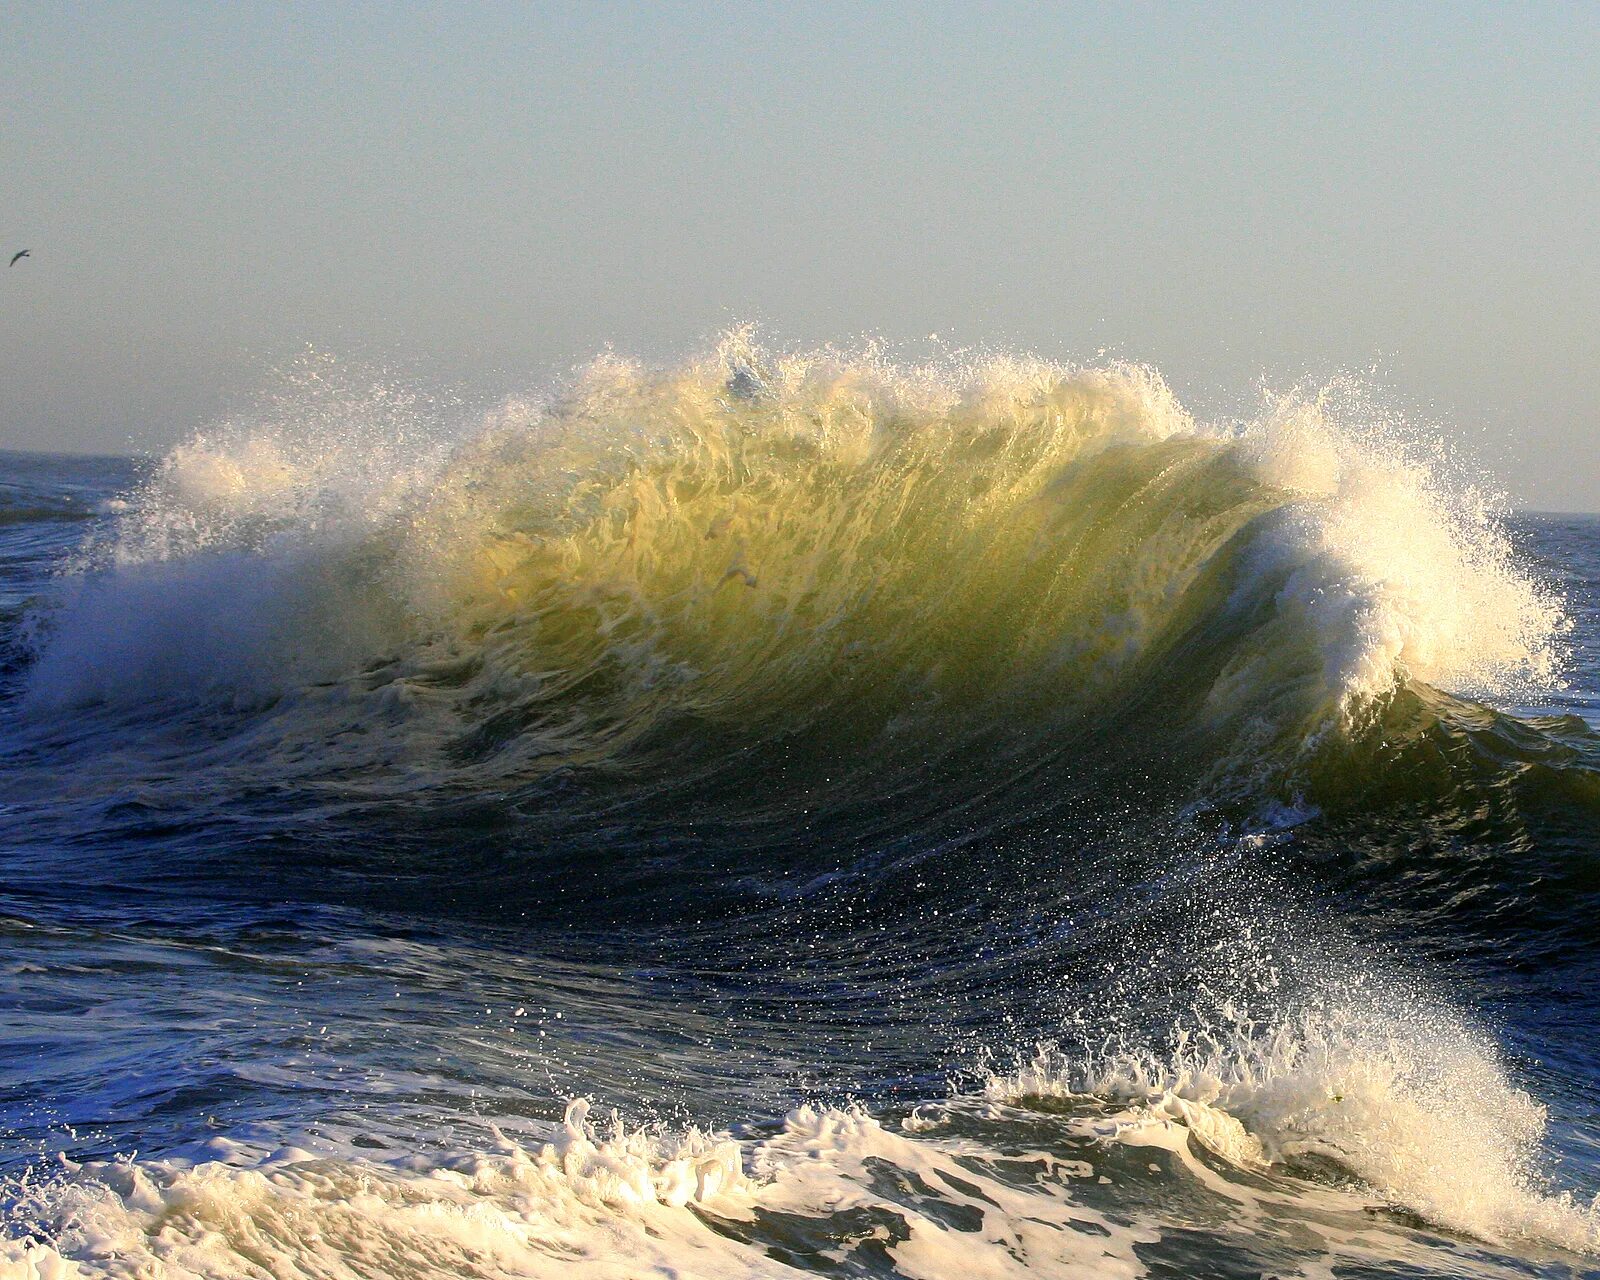 Бискайский залив волны убийцы. Штормовое Крым море. Море, волны. Удивительная красота моря. Волна с волною спорит